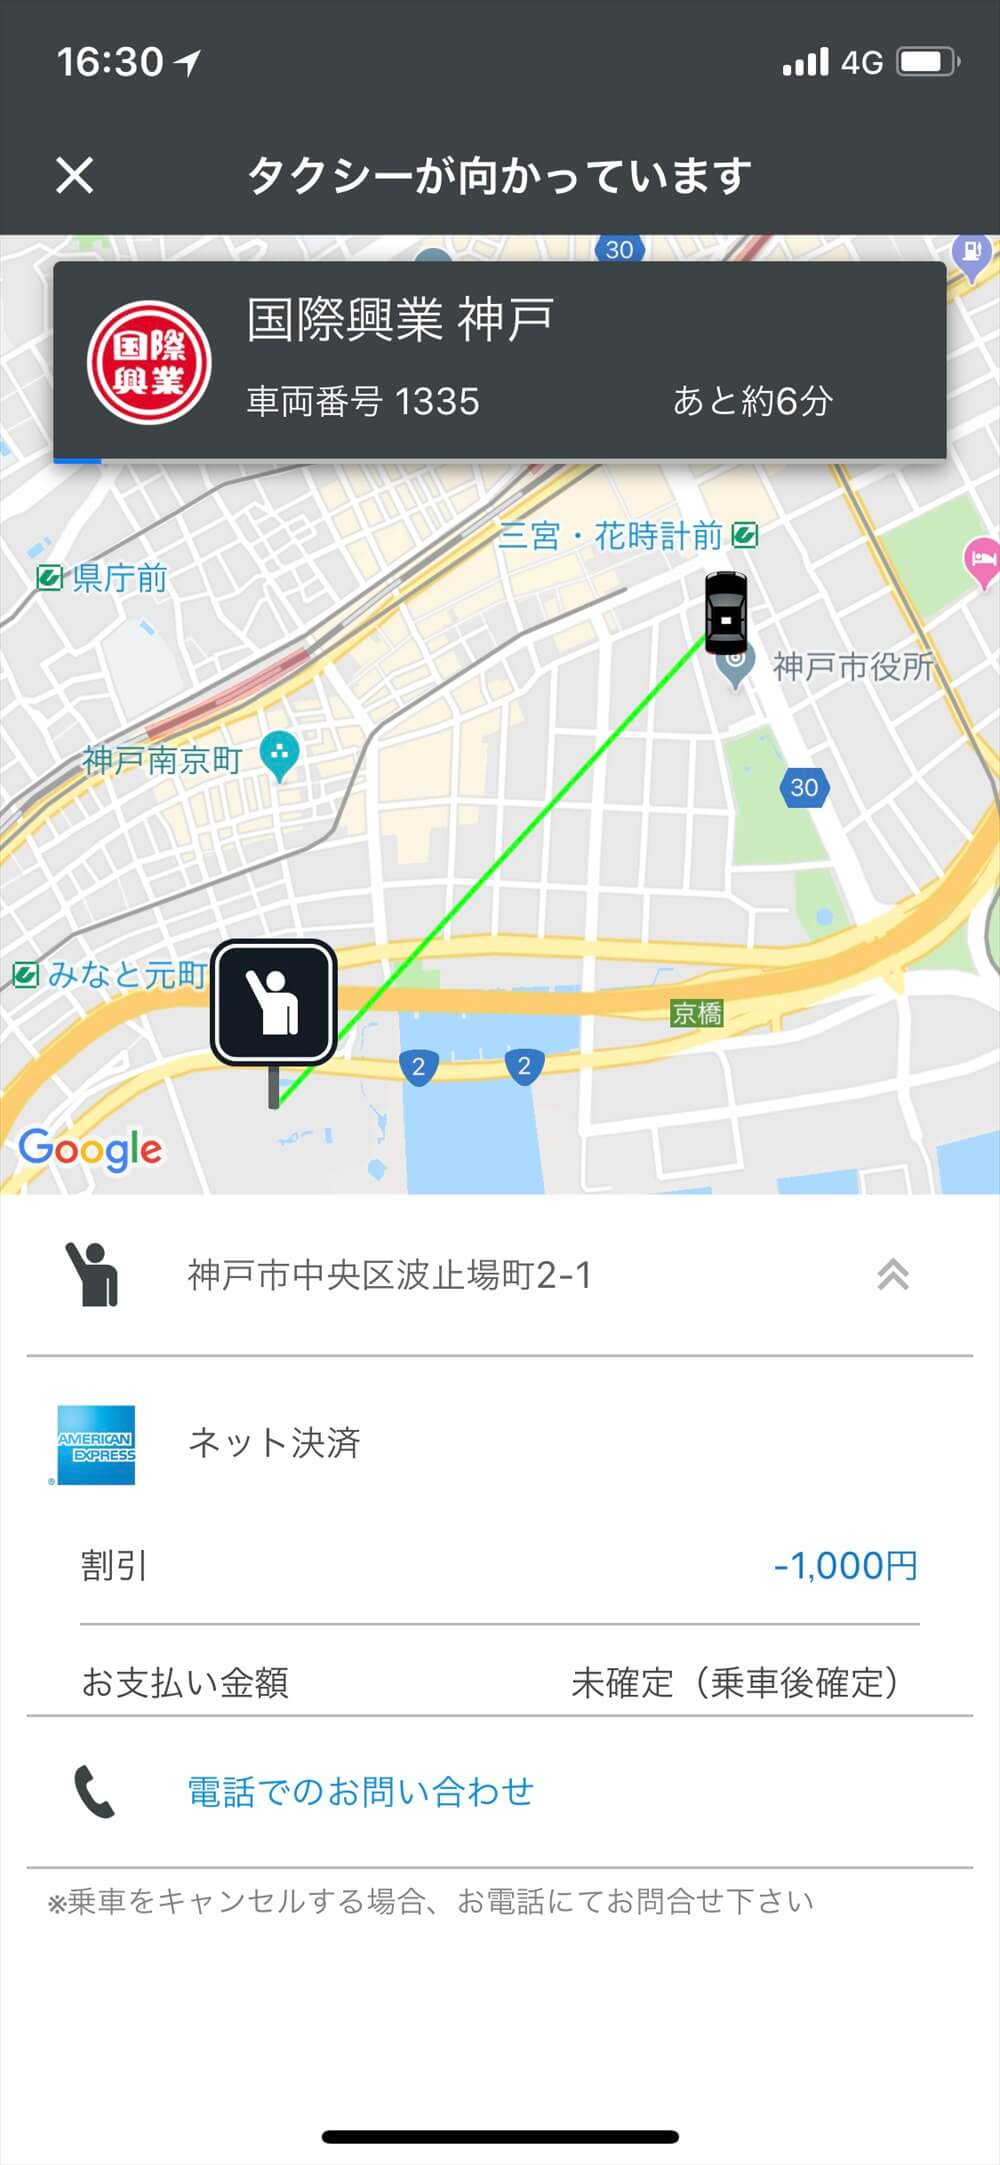 全国タクシーでホテルオークラ神戸に配車手配